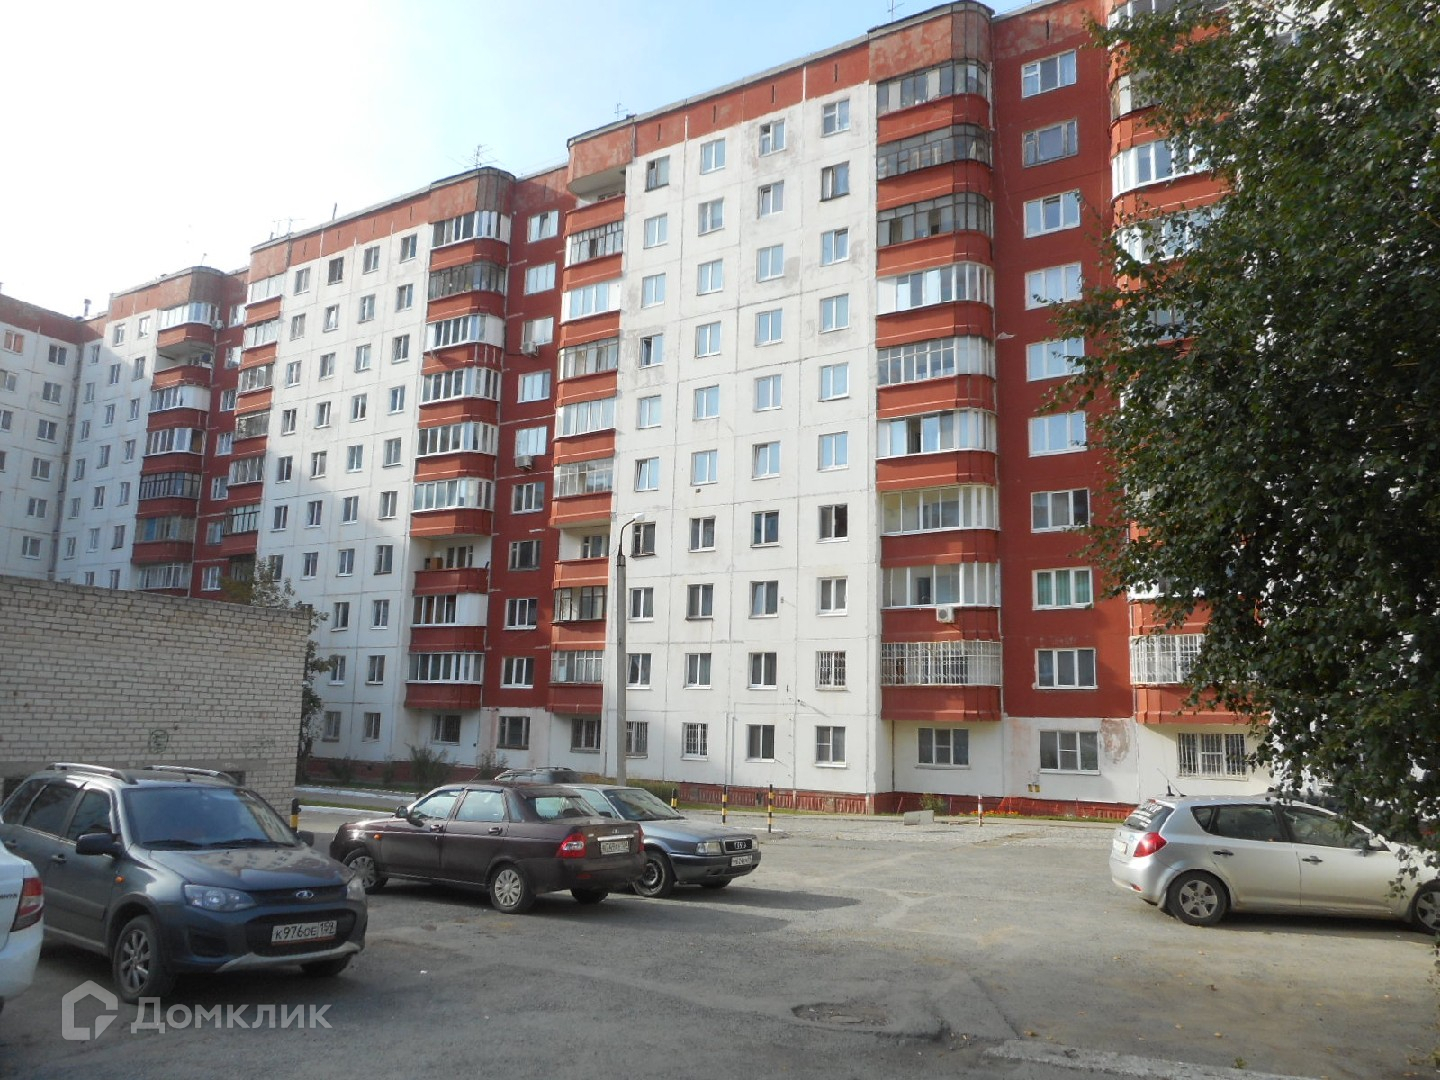 Купить 1-комнатную квартиру, 35.74 м² по адресу Пермь, улица Мира, 115 .